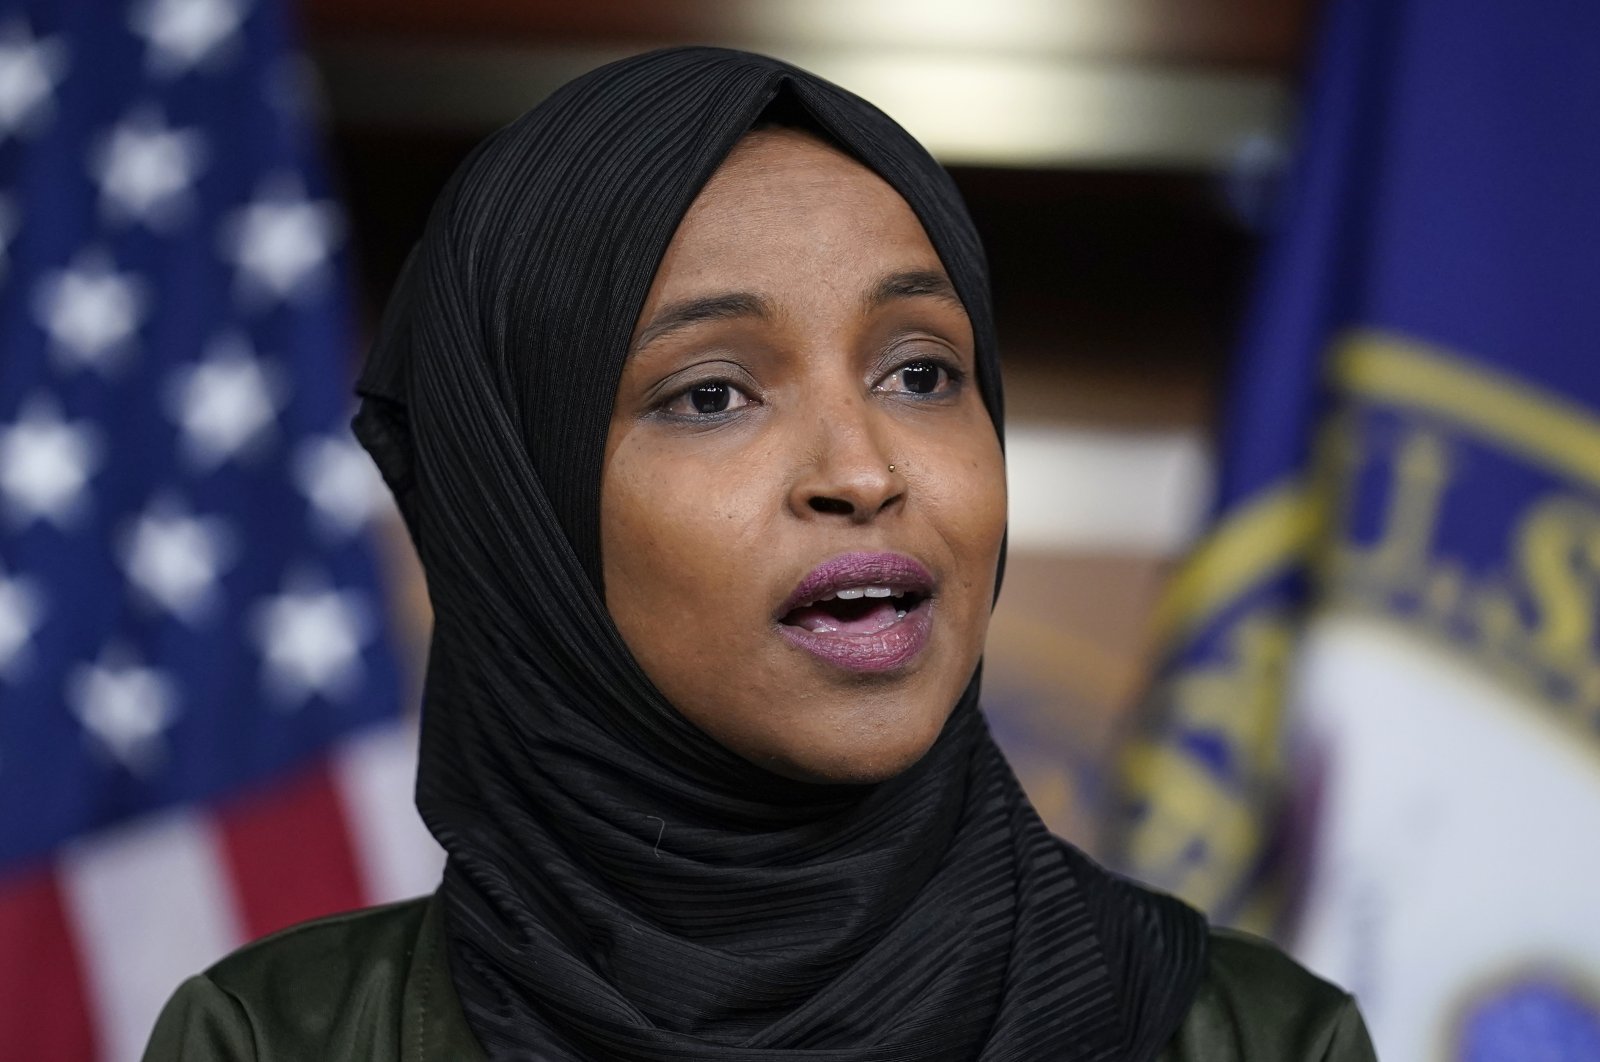 Trump bergabung dengan paduan suara cercaan anti-Muslim pada Rep. AS Ilhan Omar